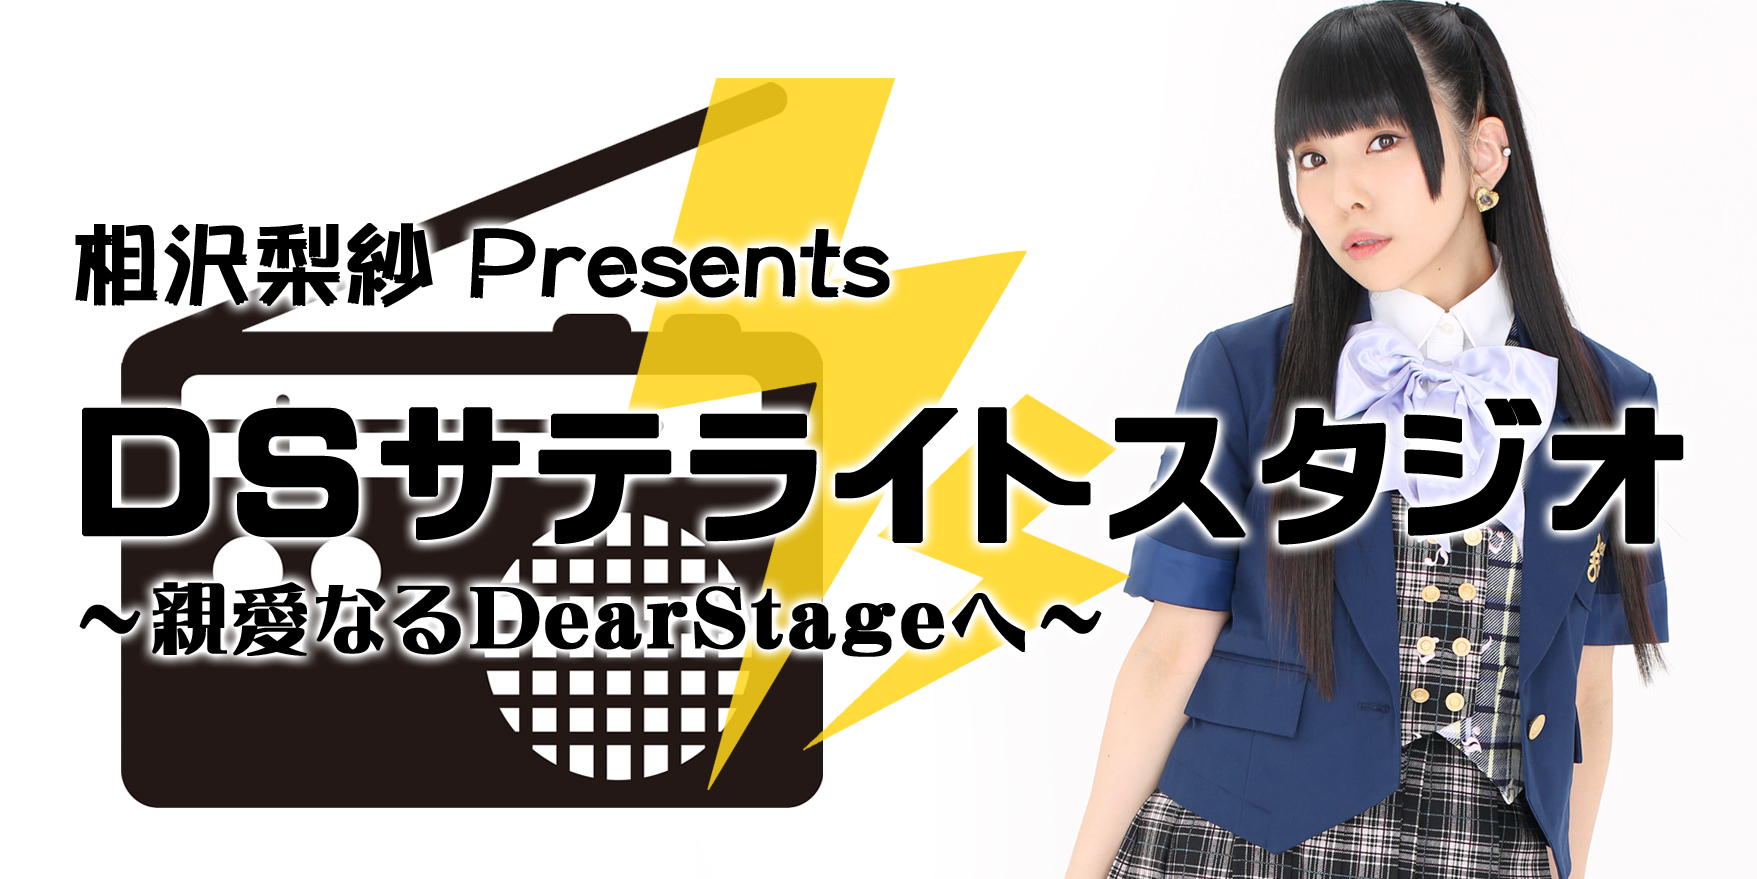 相沢梨紗 presents DSサテライトスタジオ ～親愛なるディアステージへ～